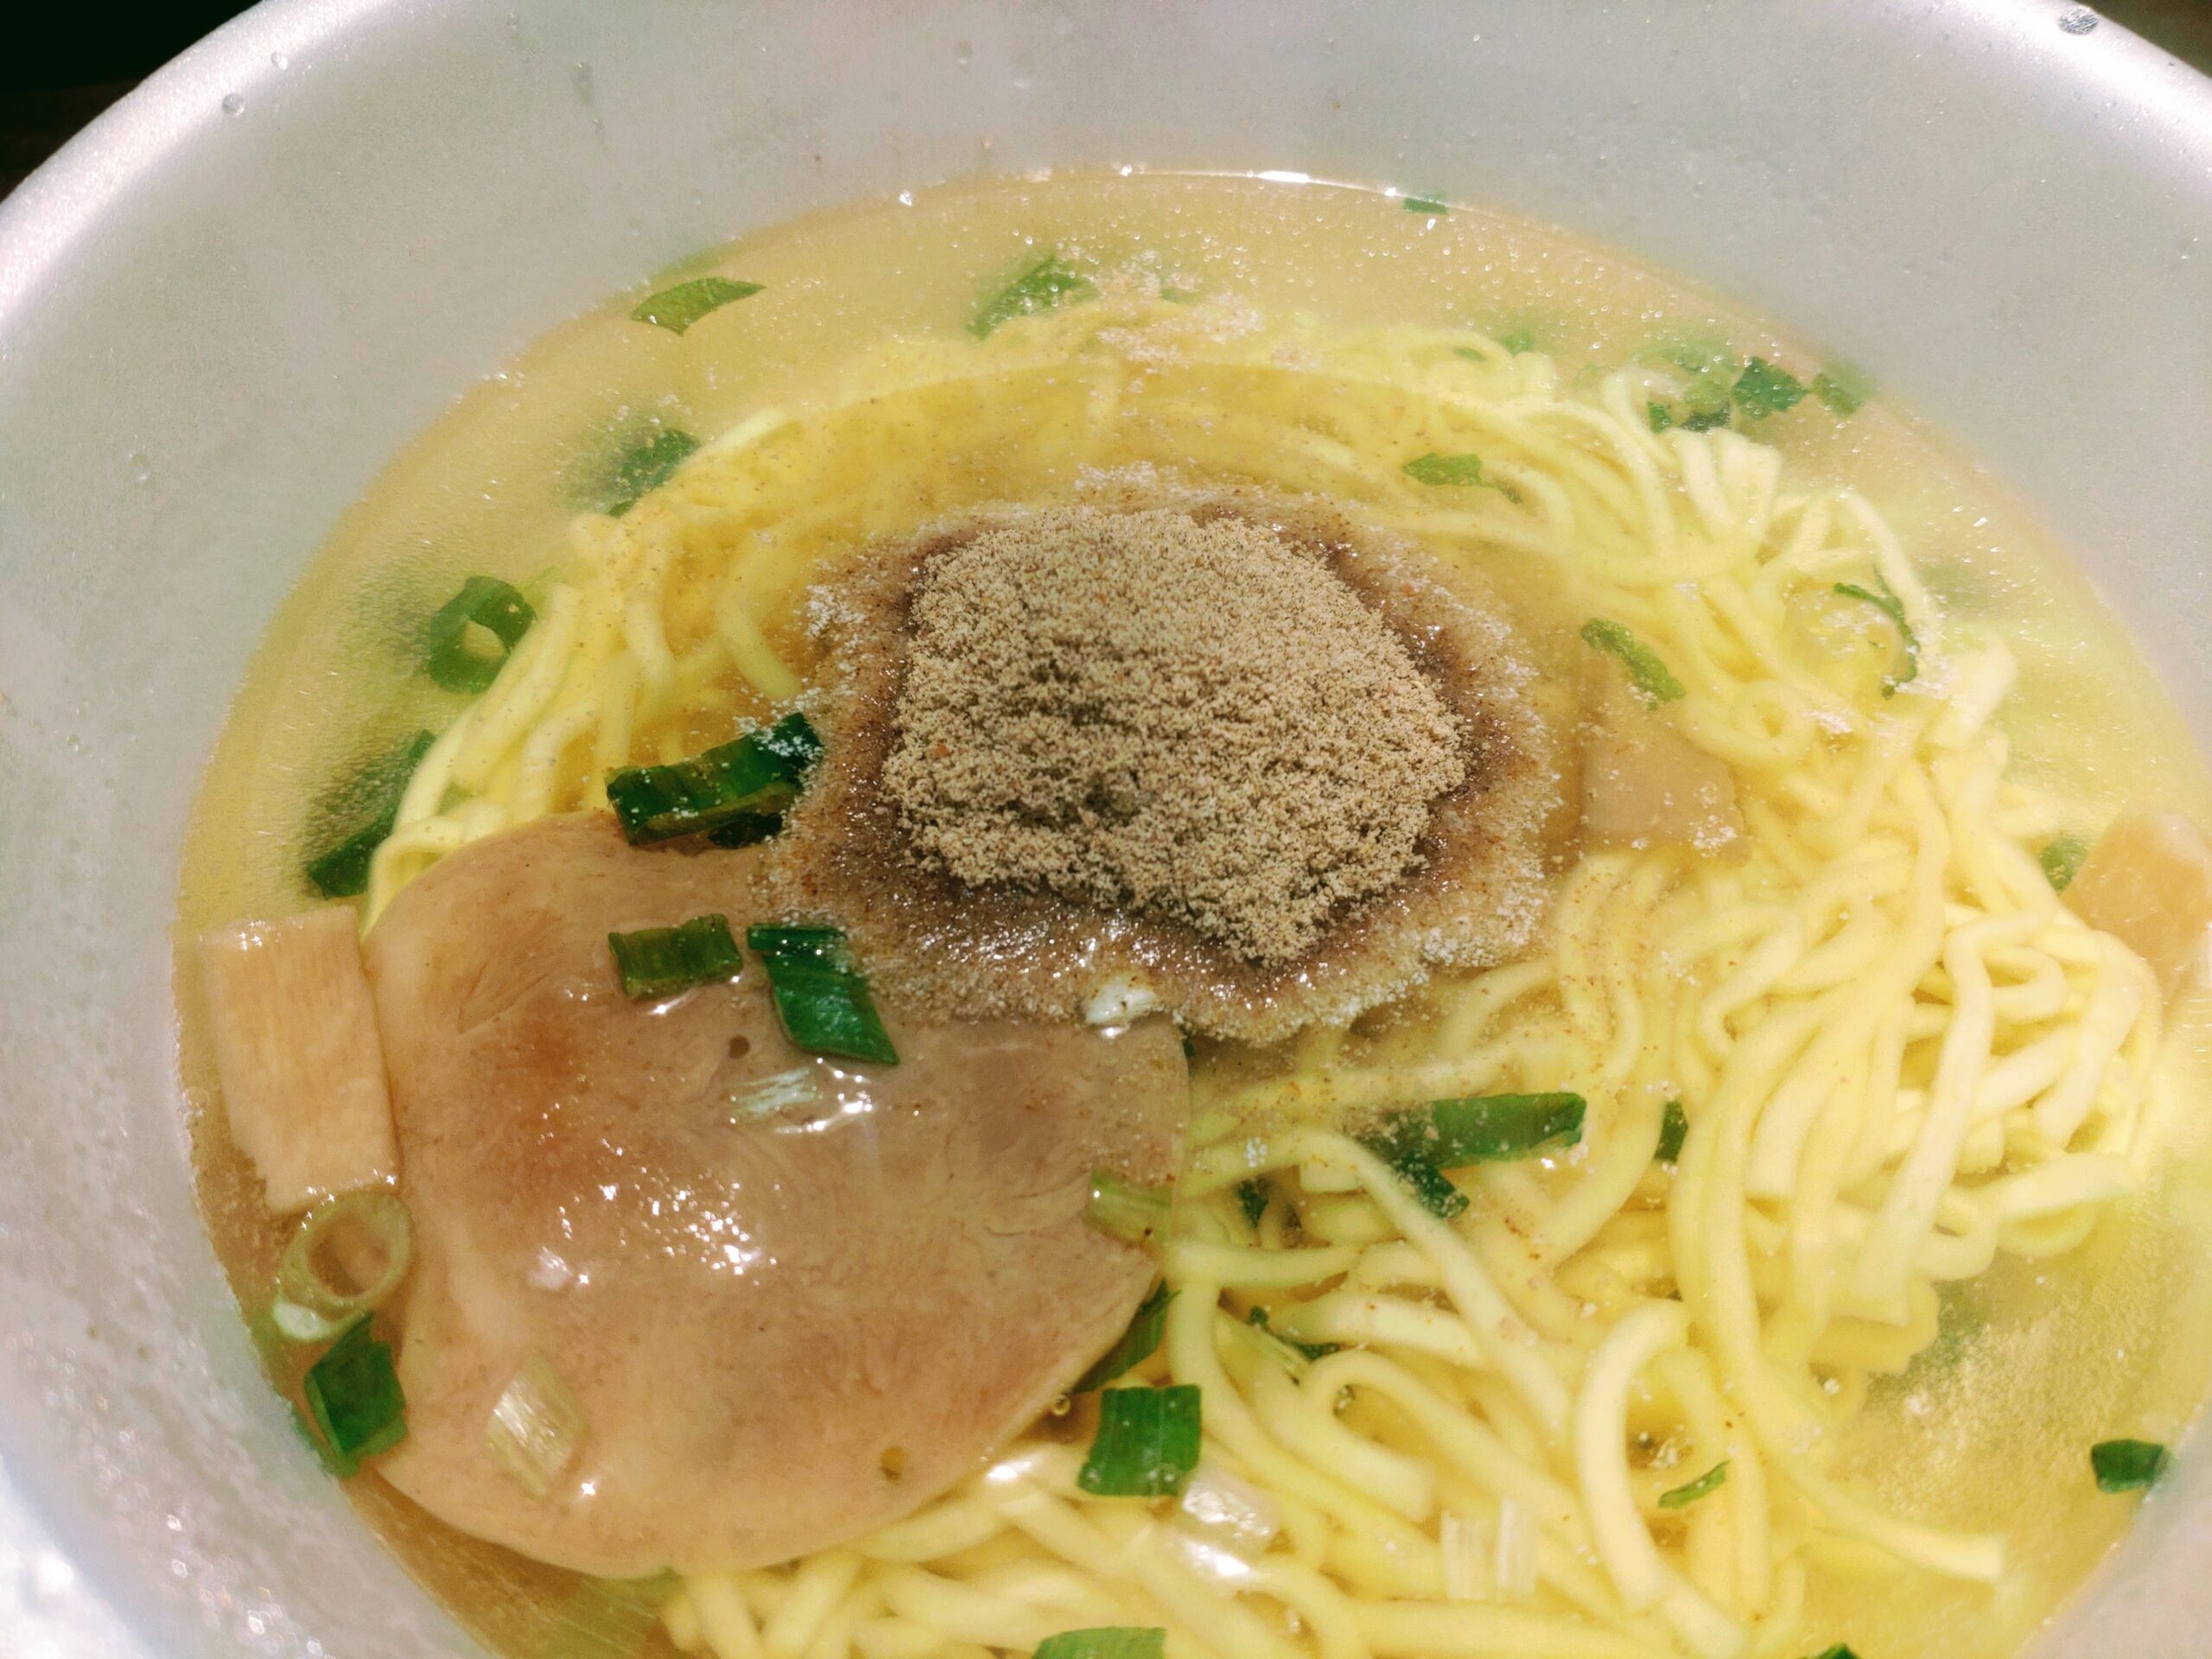 マルちゃん正麺 カップ 極濃魚介豚骨に粉末スープを入れたところ